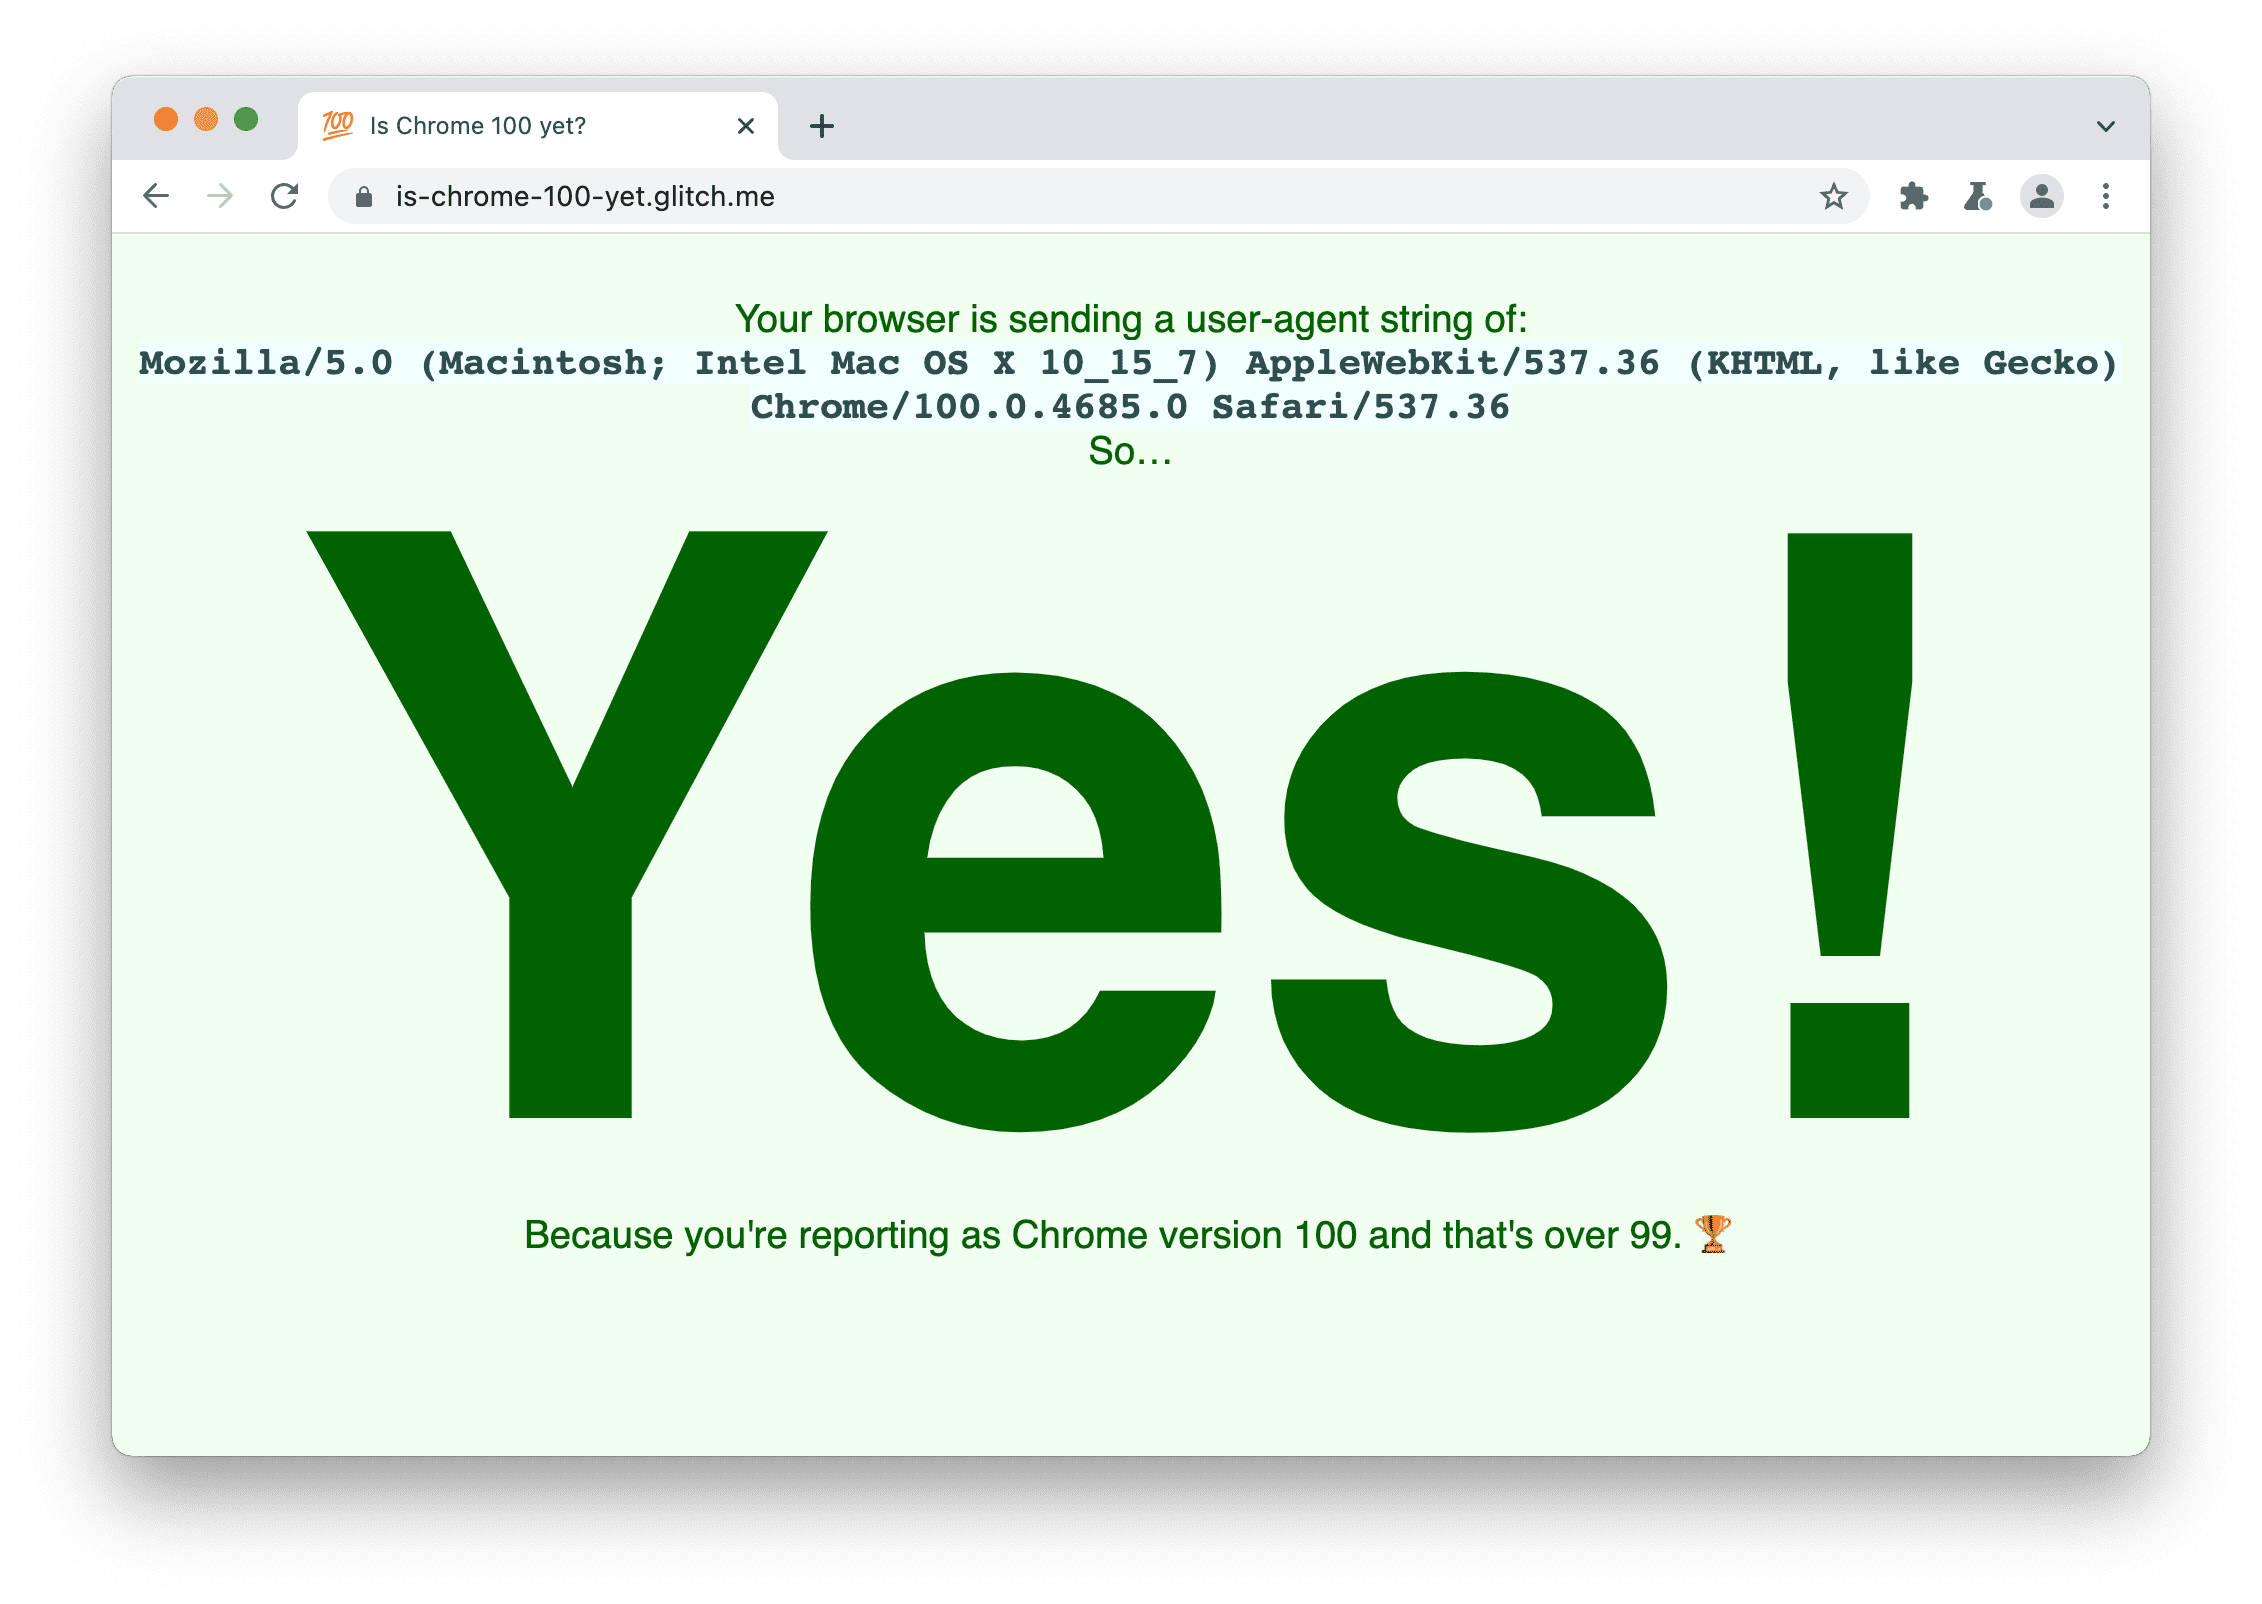 Un sitio que verifica si el navegador envía la string de usuario-agente 100. Muestra el siguiente mensaje: Sí, porque denuncias la versión 100 de Chrome, que es superior a la 99.